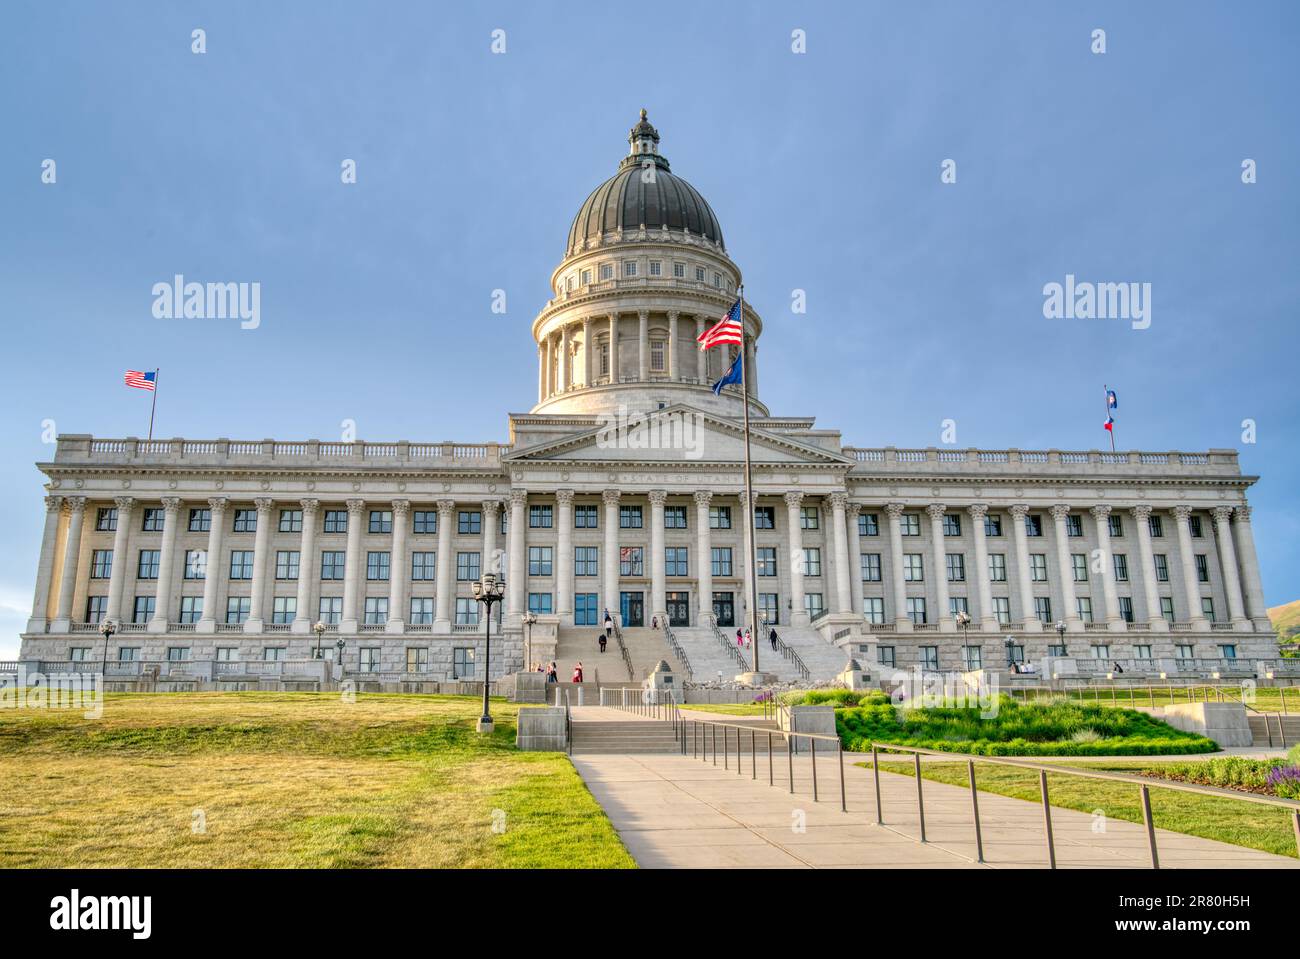 Utah State Capitol Building on Capitol Hill in Salt Lake City, Utah Stock Photo